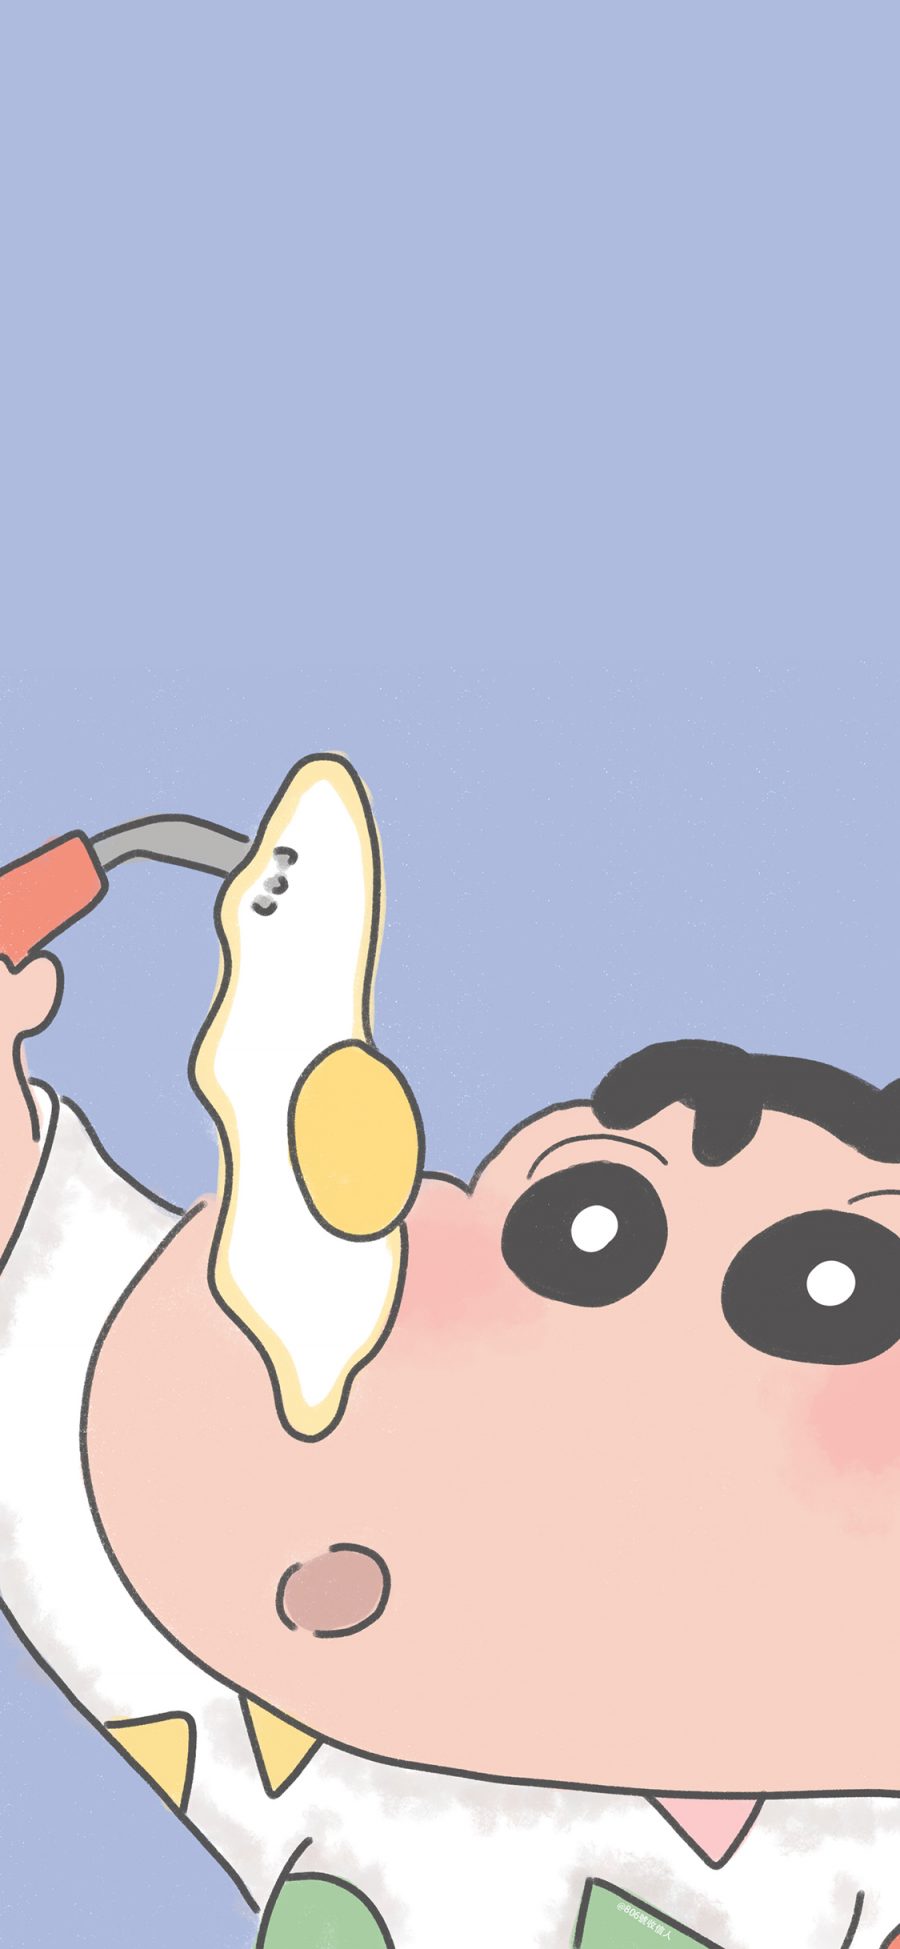 [2436×1125]蜡笔小新 荷包蛋 煎蛋 日本 动画 苹果手机动漫壁纸图片